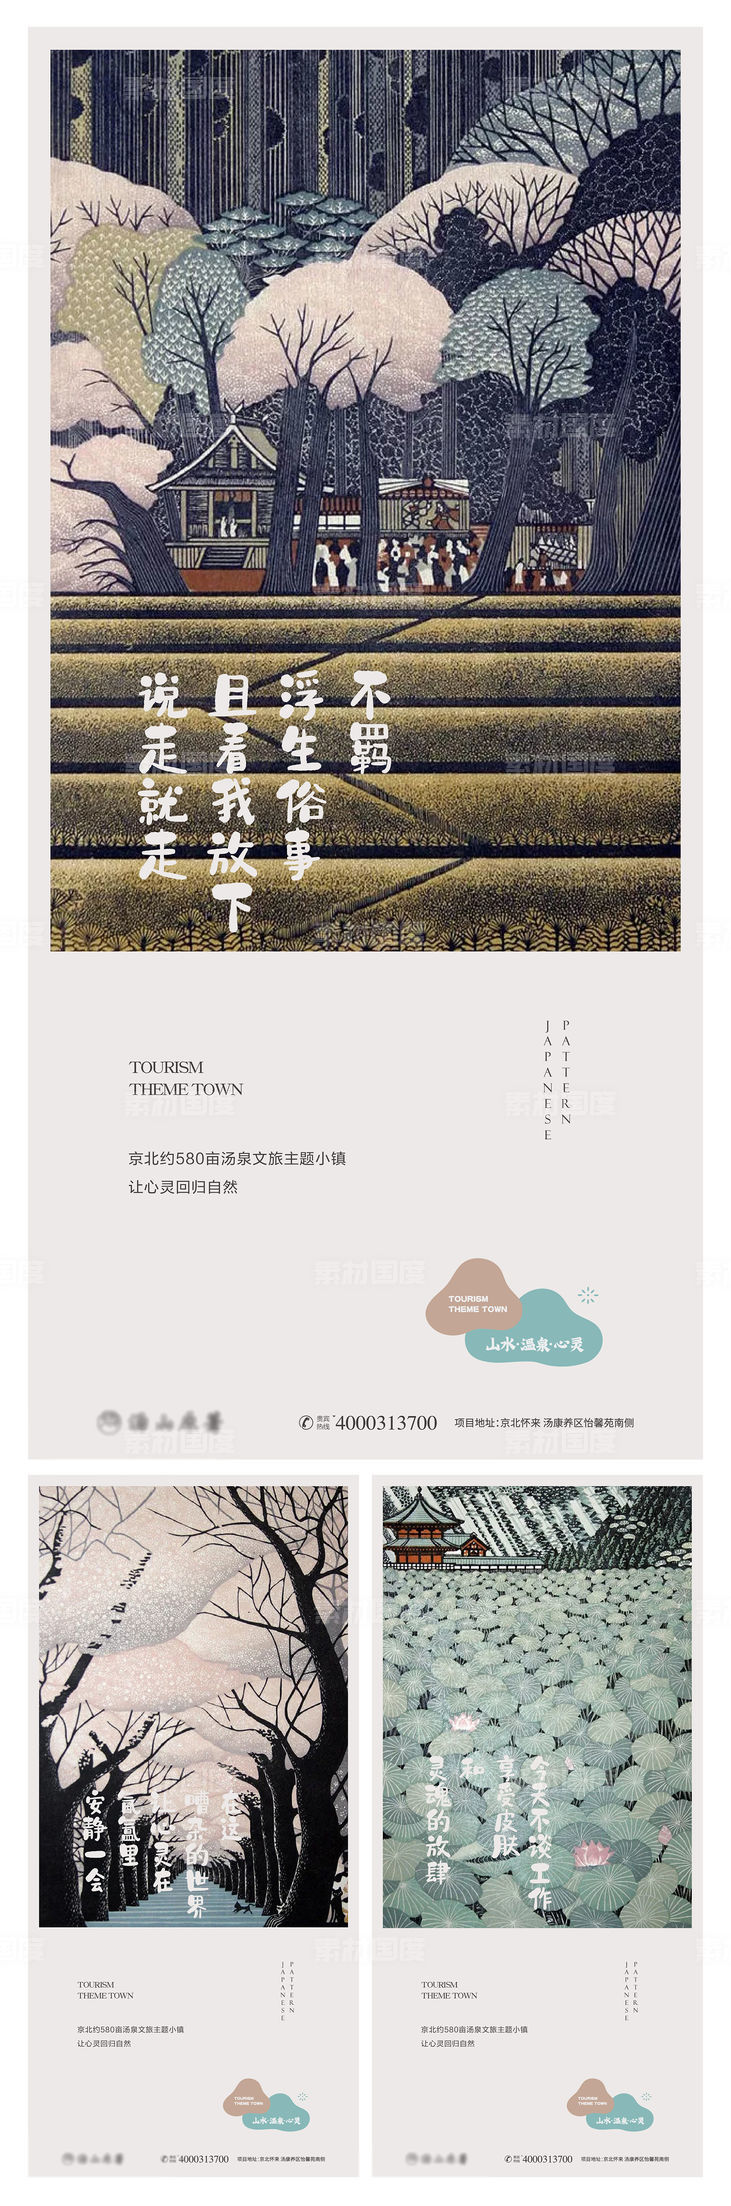 地产温泉文旅大气山林手绘度假主形象微信背景海报设计